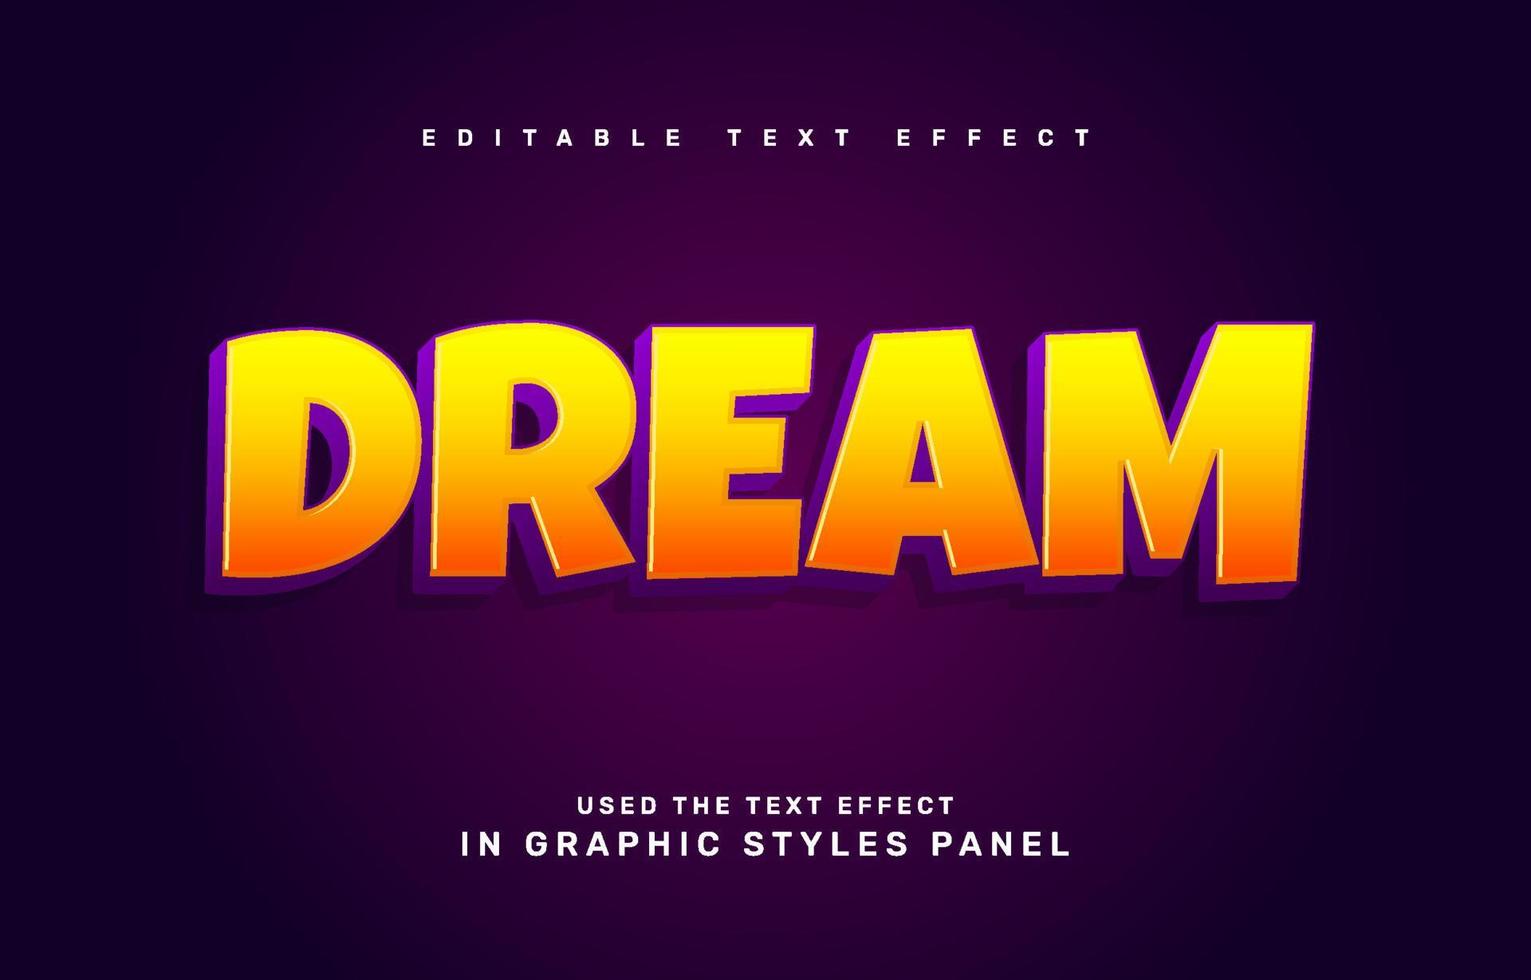 Dream text effect vector